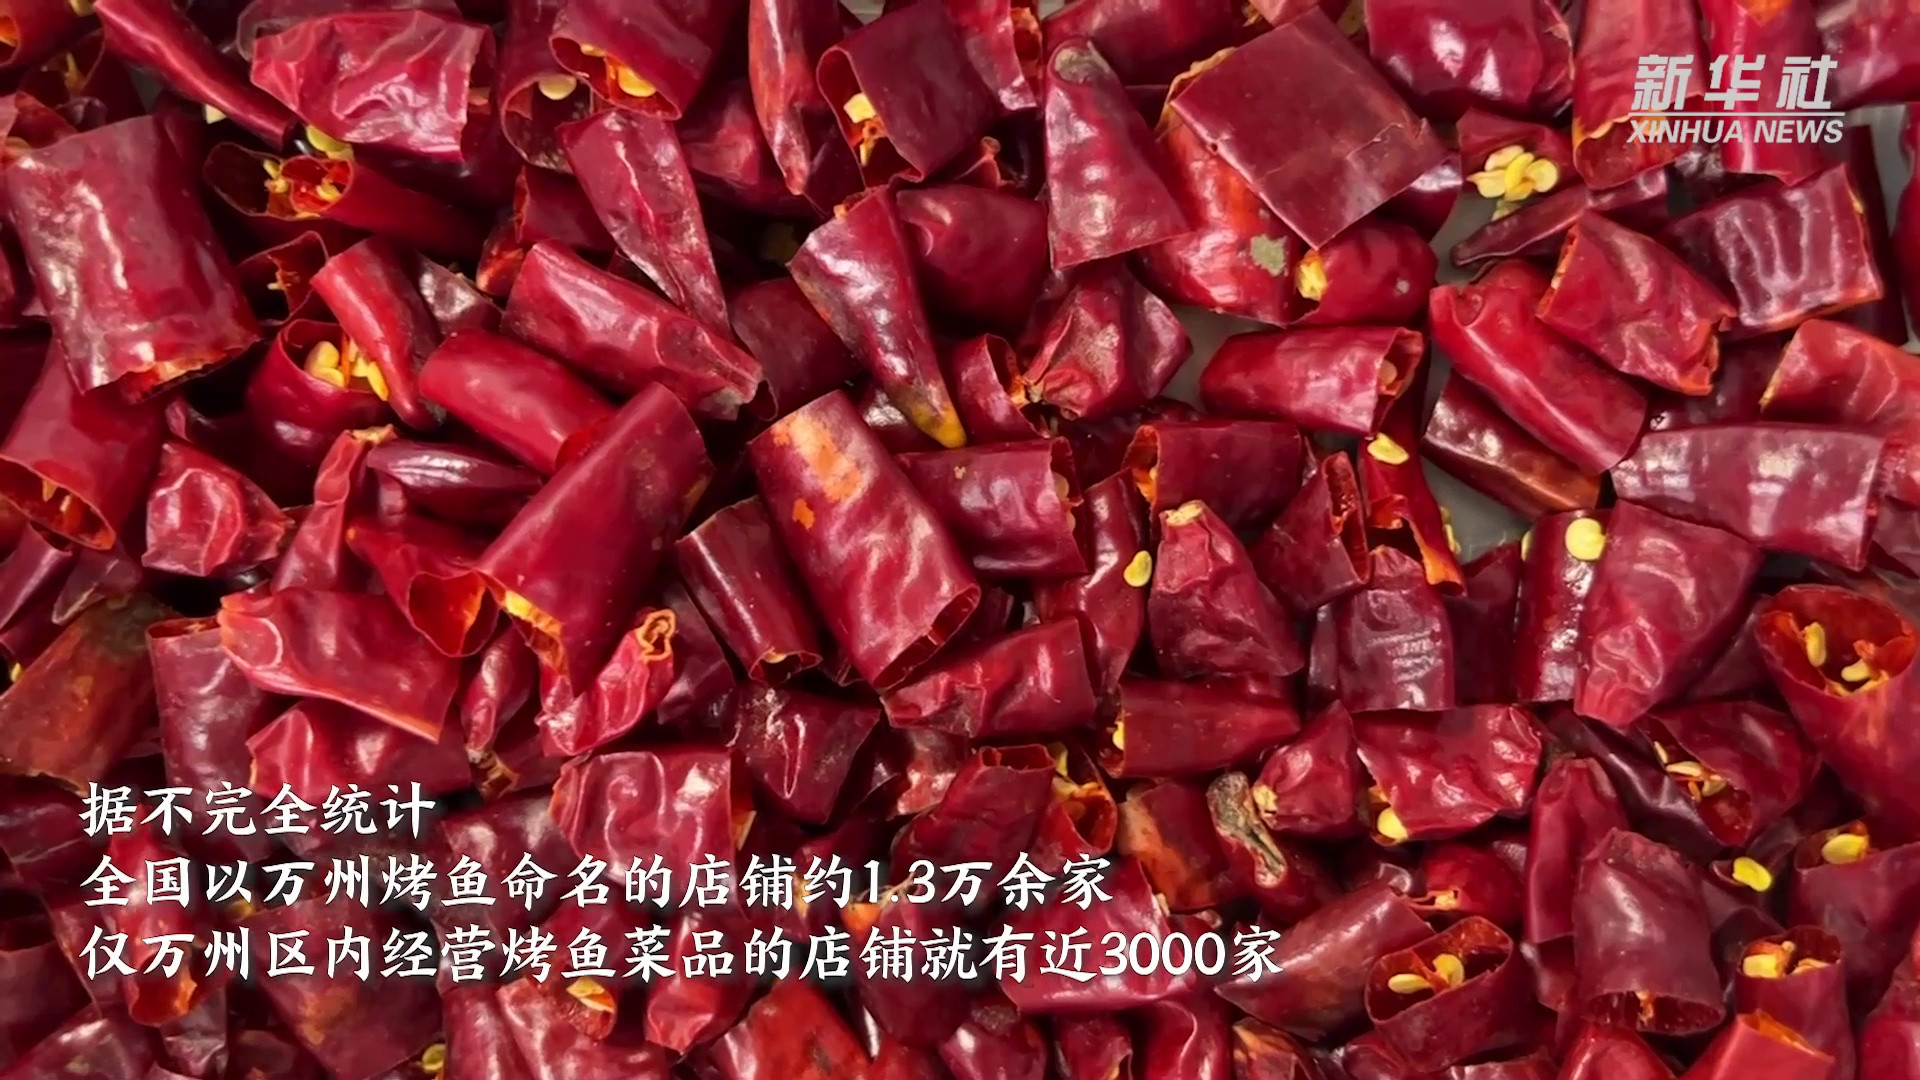 重庆万州: 烤鱼技术培训促就业